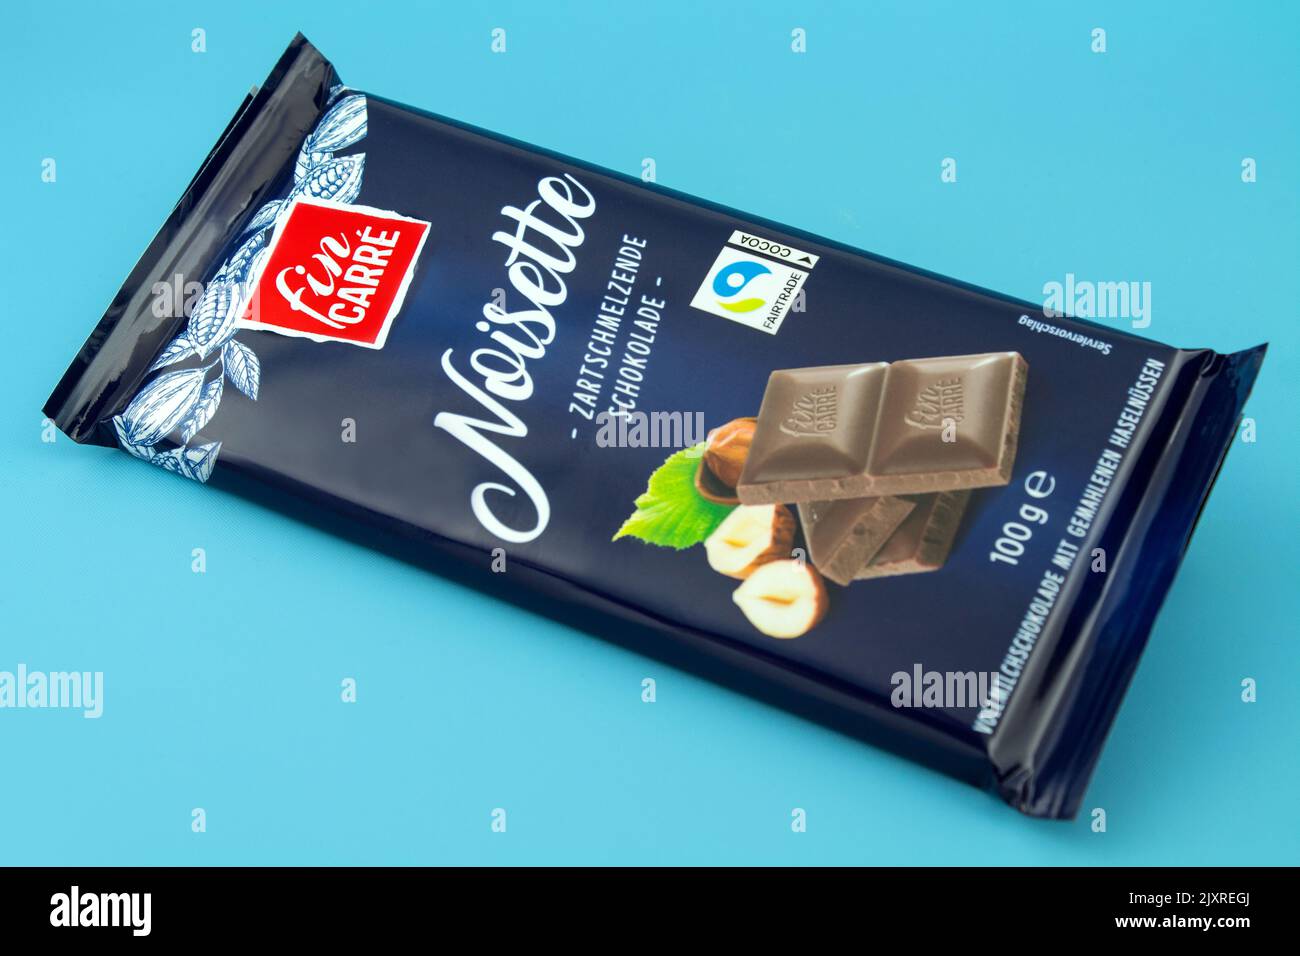 1 Noisette Chocolate bar avec étiquette Commerce équitable de fin de carré Banque D'Images